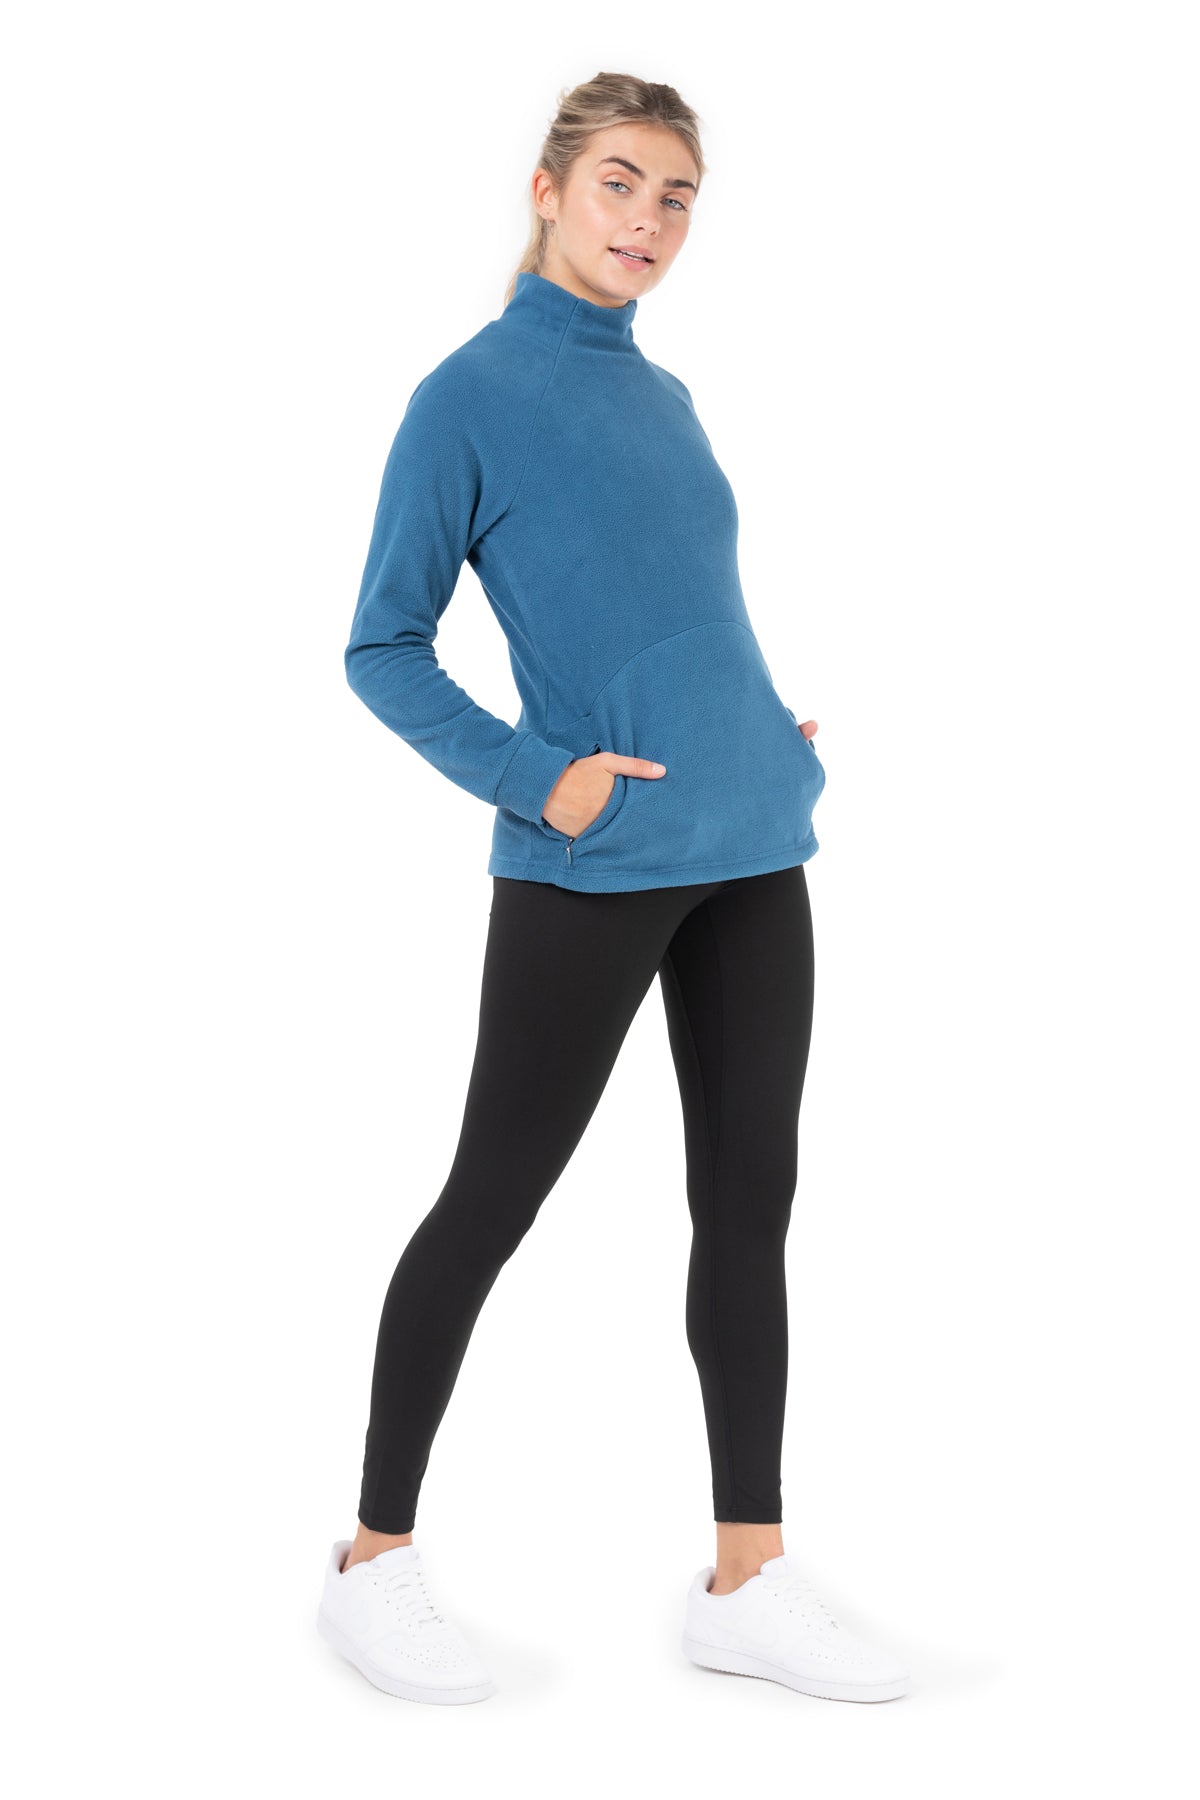 Women's breathable short running leggings Dry+ Feel - purple - StoresRadar